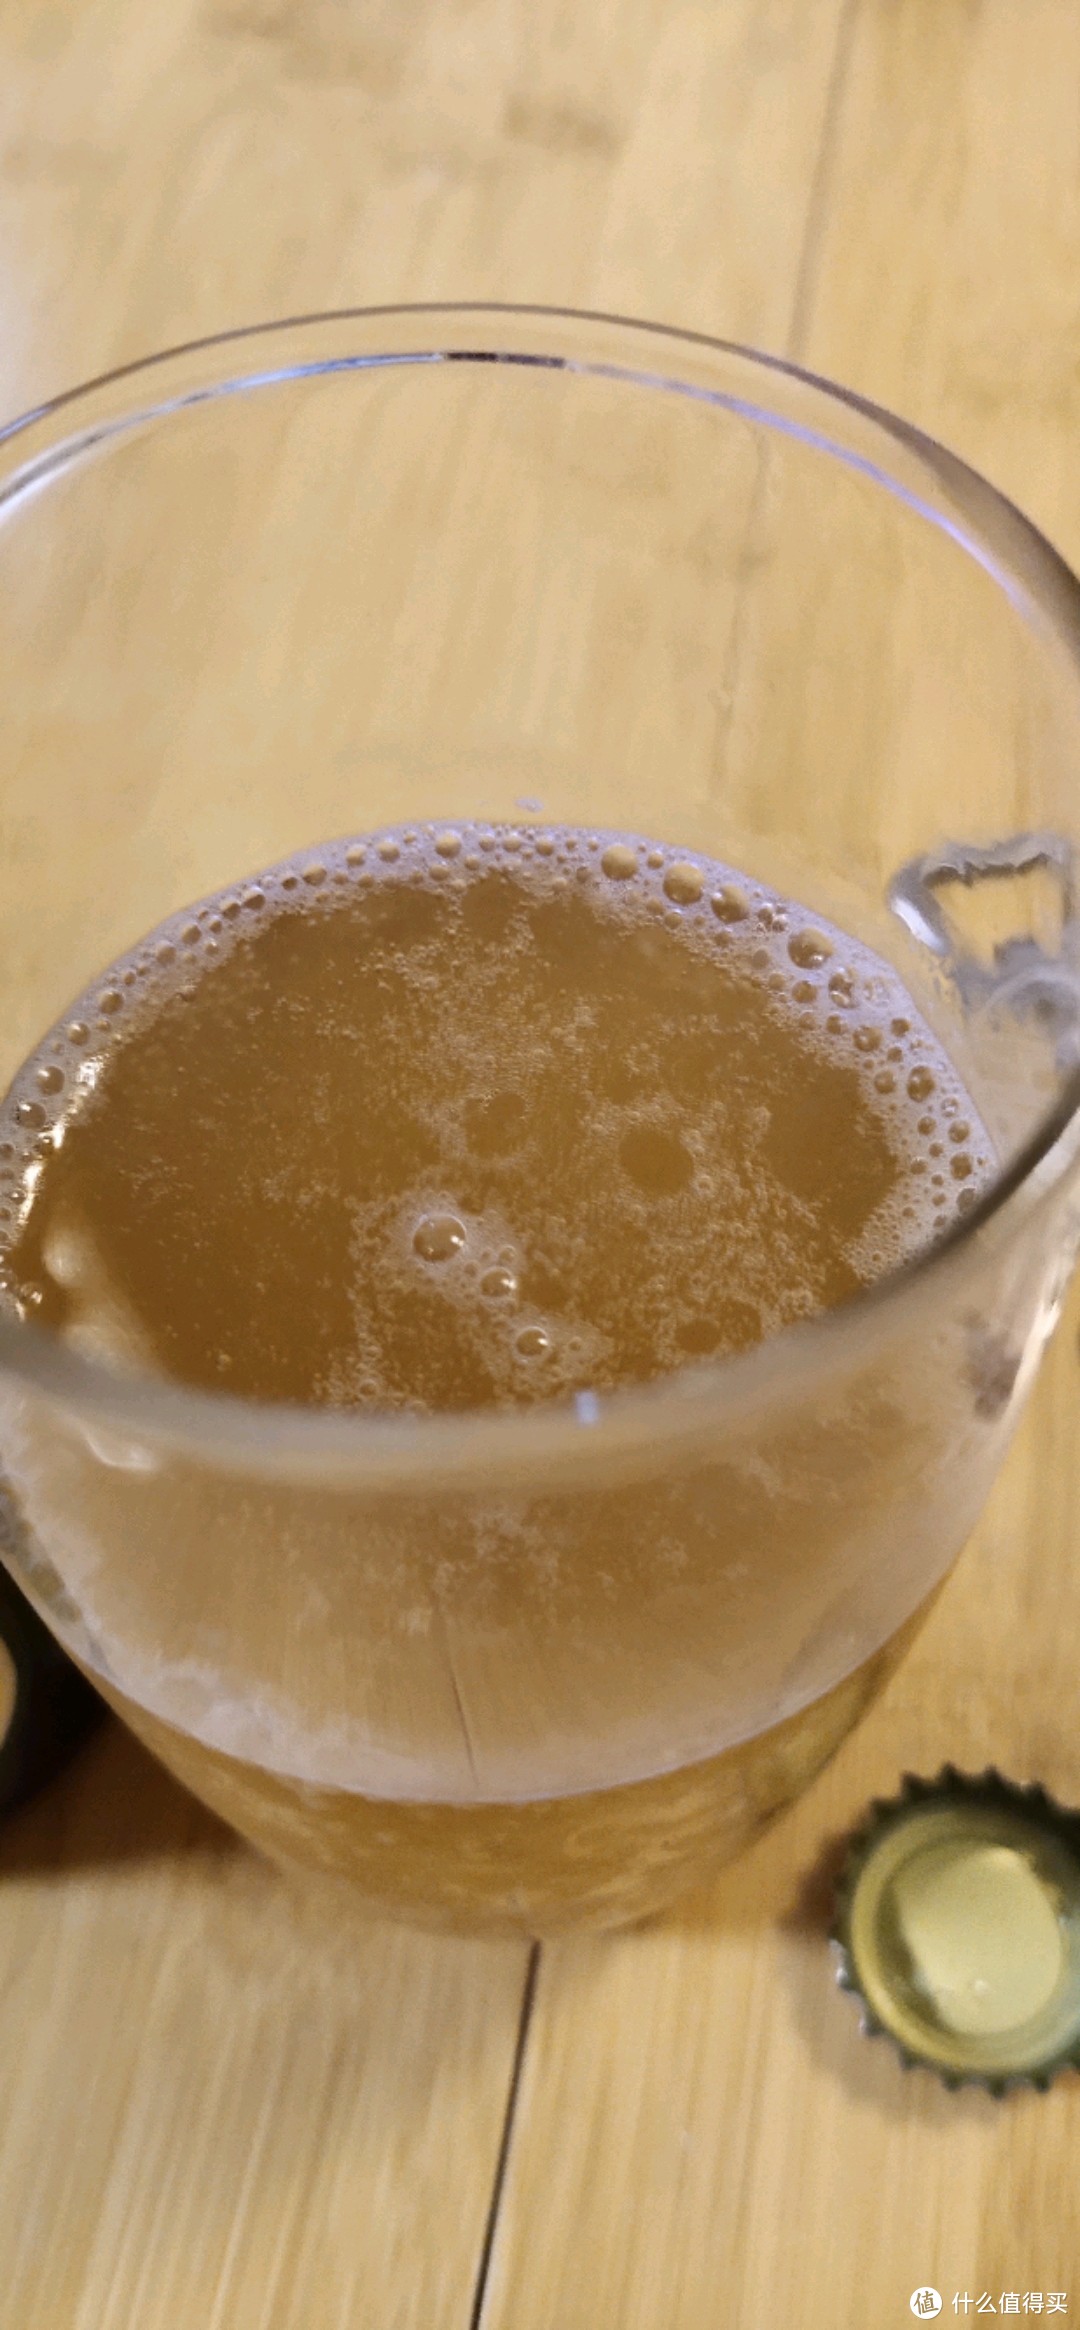 没有四大日本啤酒品牌，来自日本冈山县宫下酒造的柚子精酿啤酒口味如何？